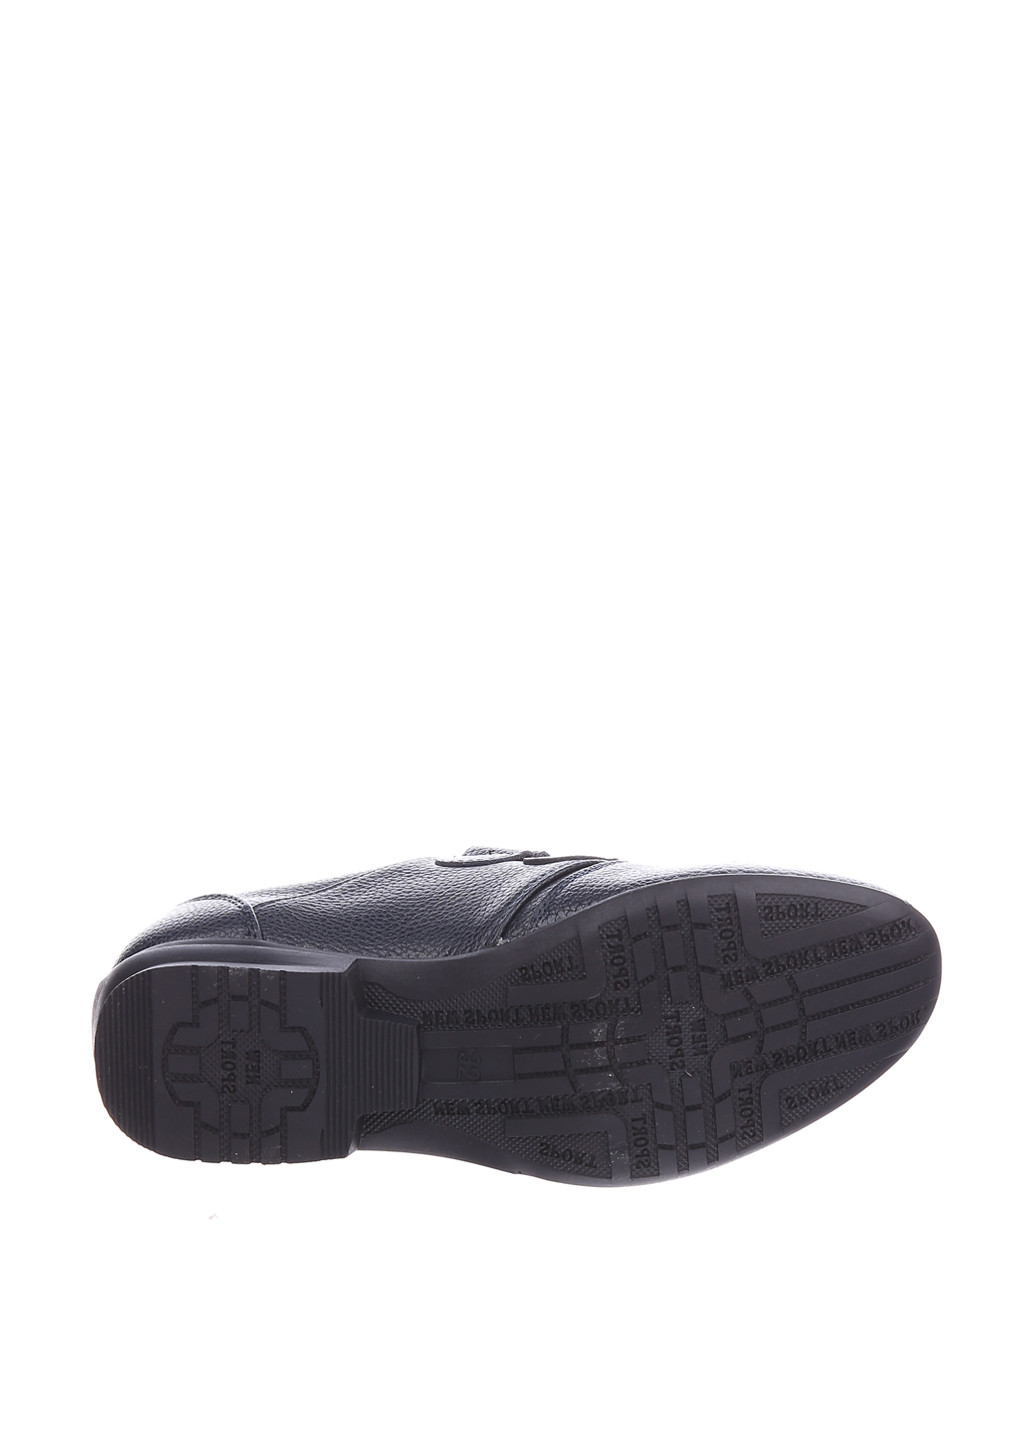 Черные туфли на липучке Шалунишка